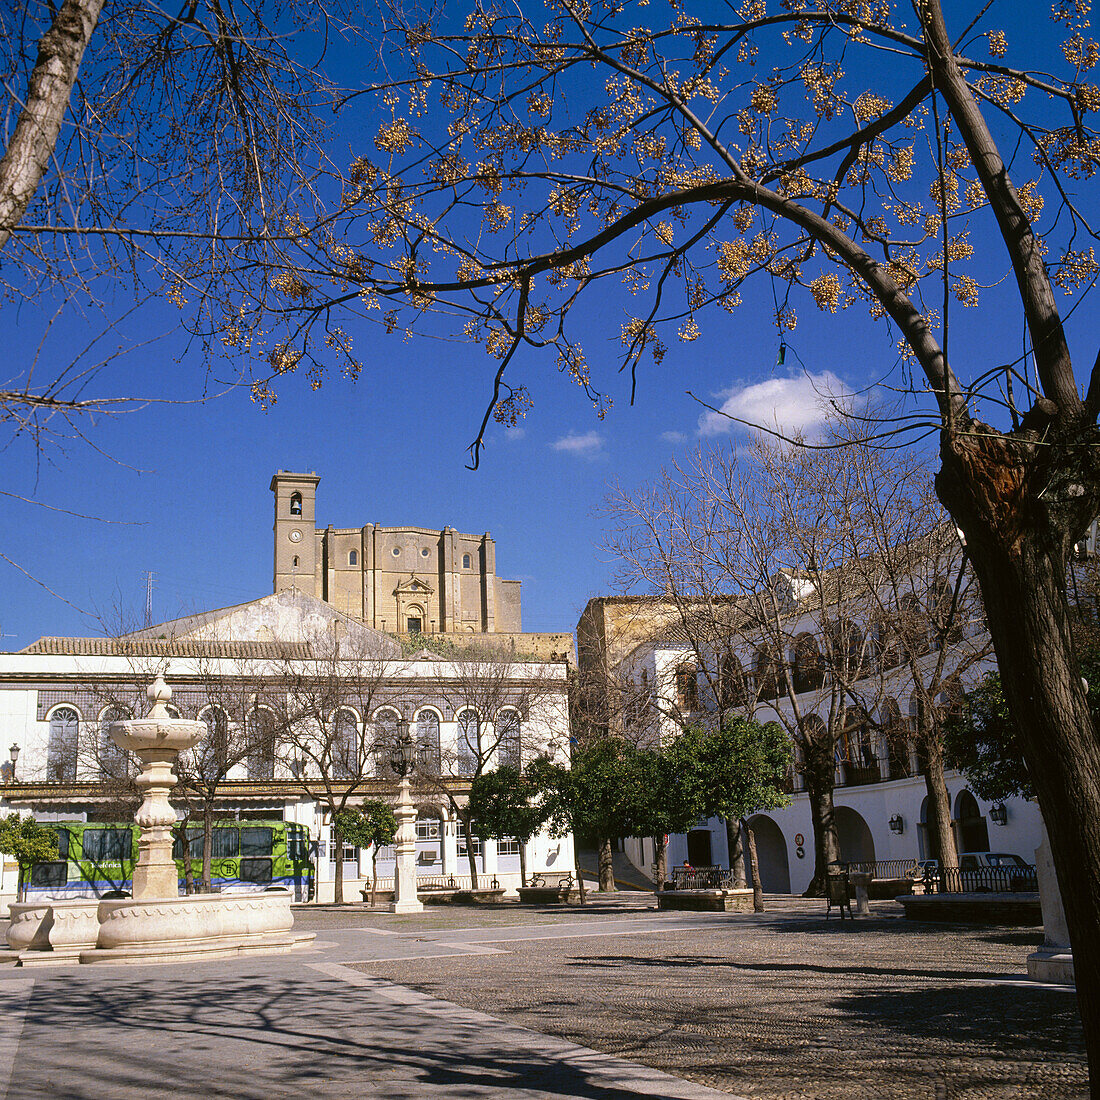 Main Square, collegiate church in background. Osuna. Sevilla province. Spain